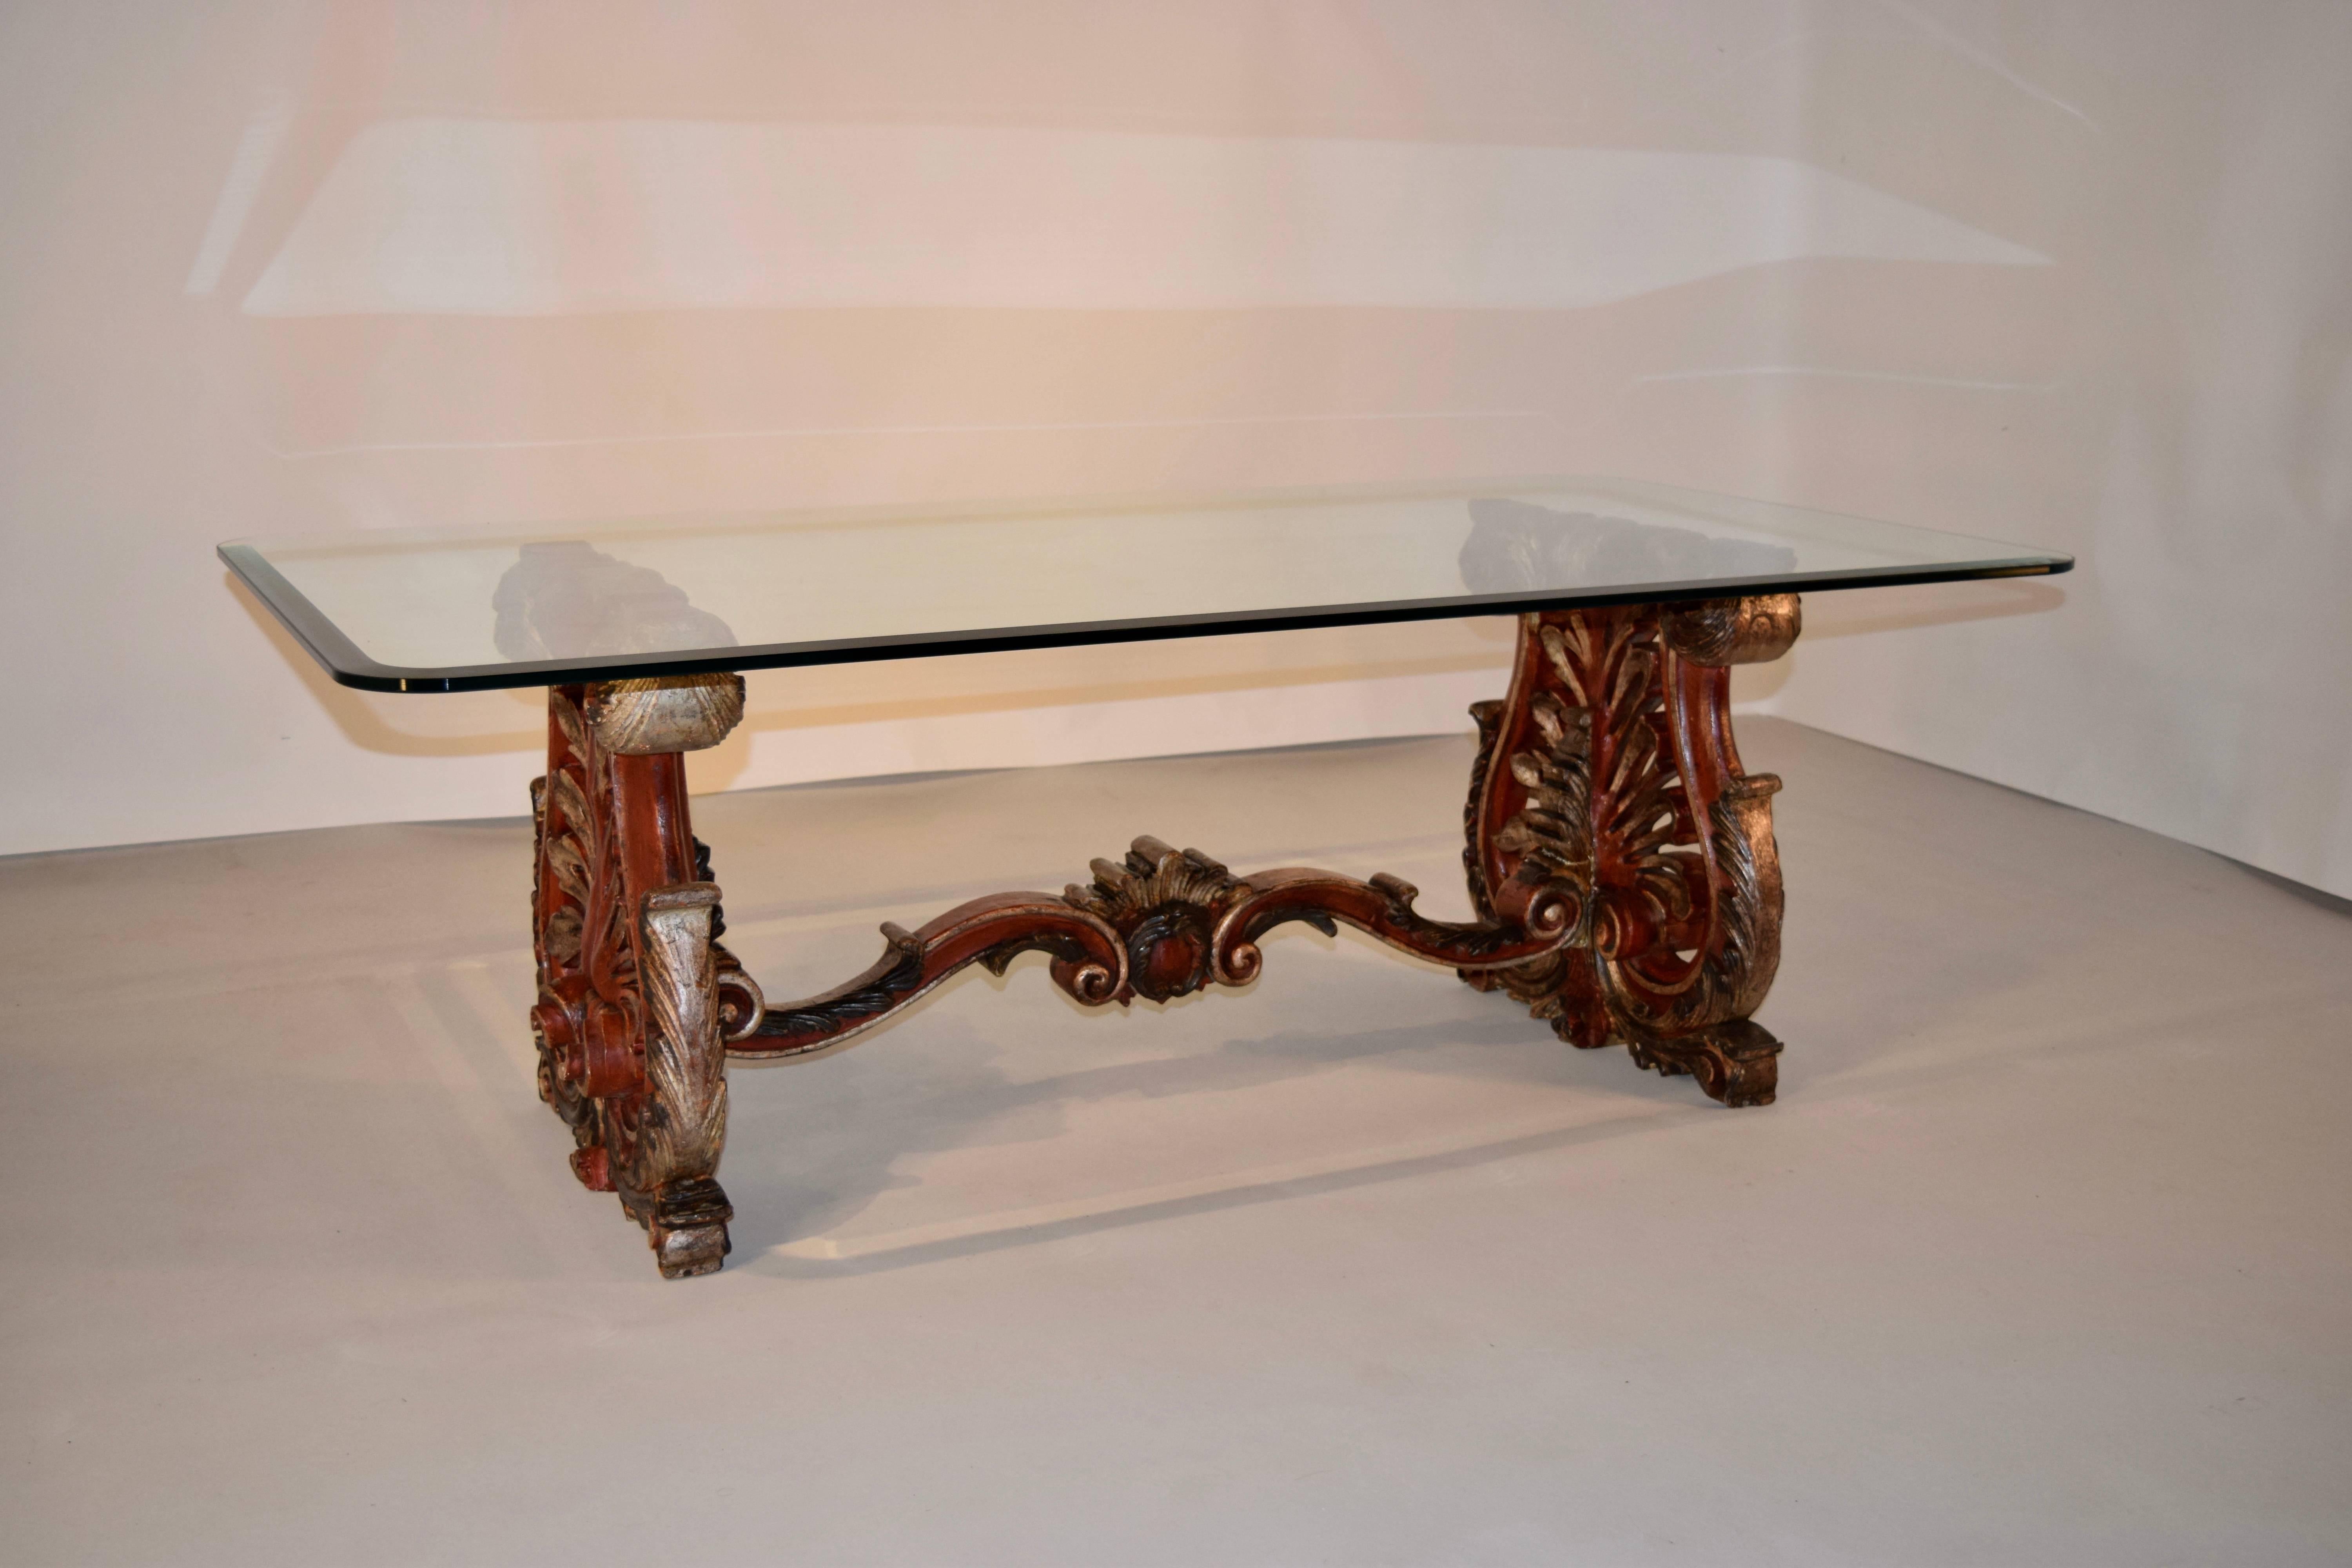 table basse en bois sculptée et peinte à la main, datant du 19e siècle et provenant d'Italie. Les supports d'extrémité sont en forme de tréteaux et sont finement sculptés de feuilles d'acanthe et de décorations percées sur un pied sculpté en forme